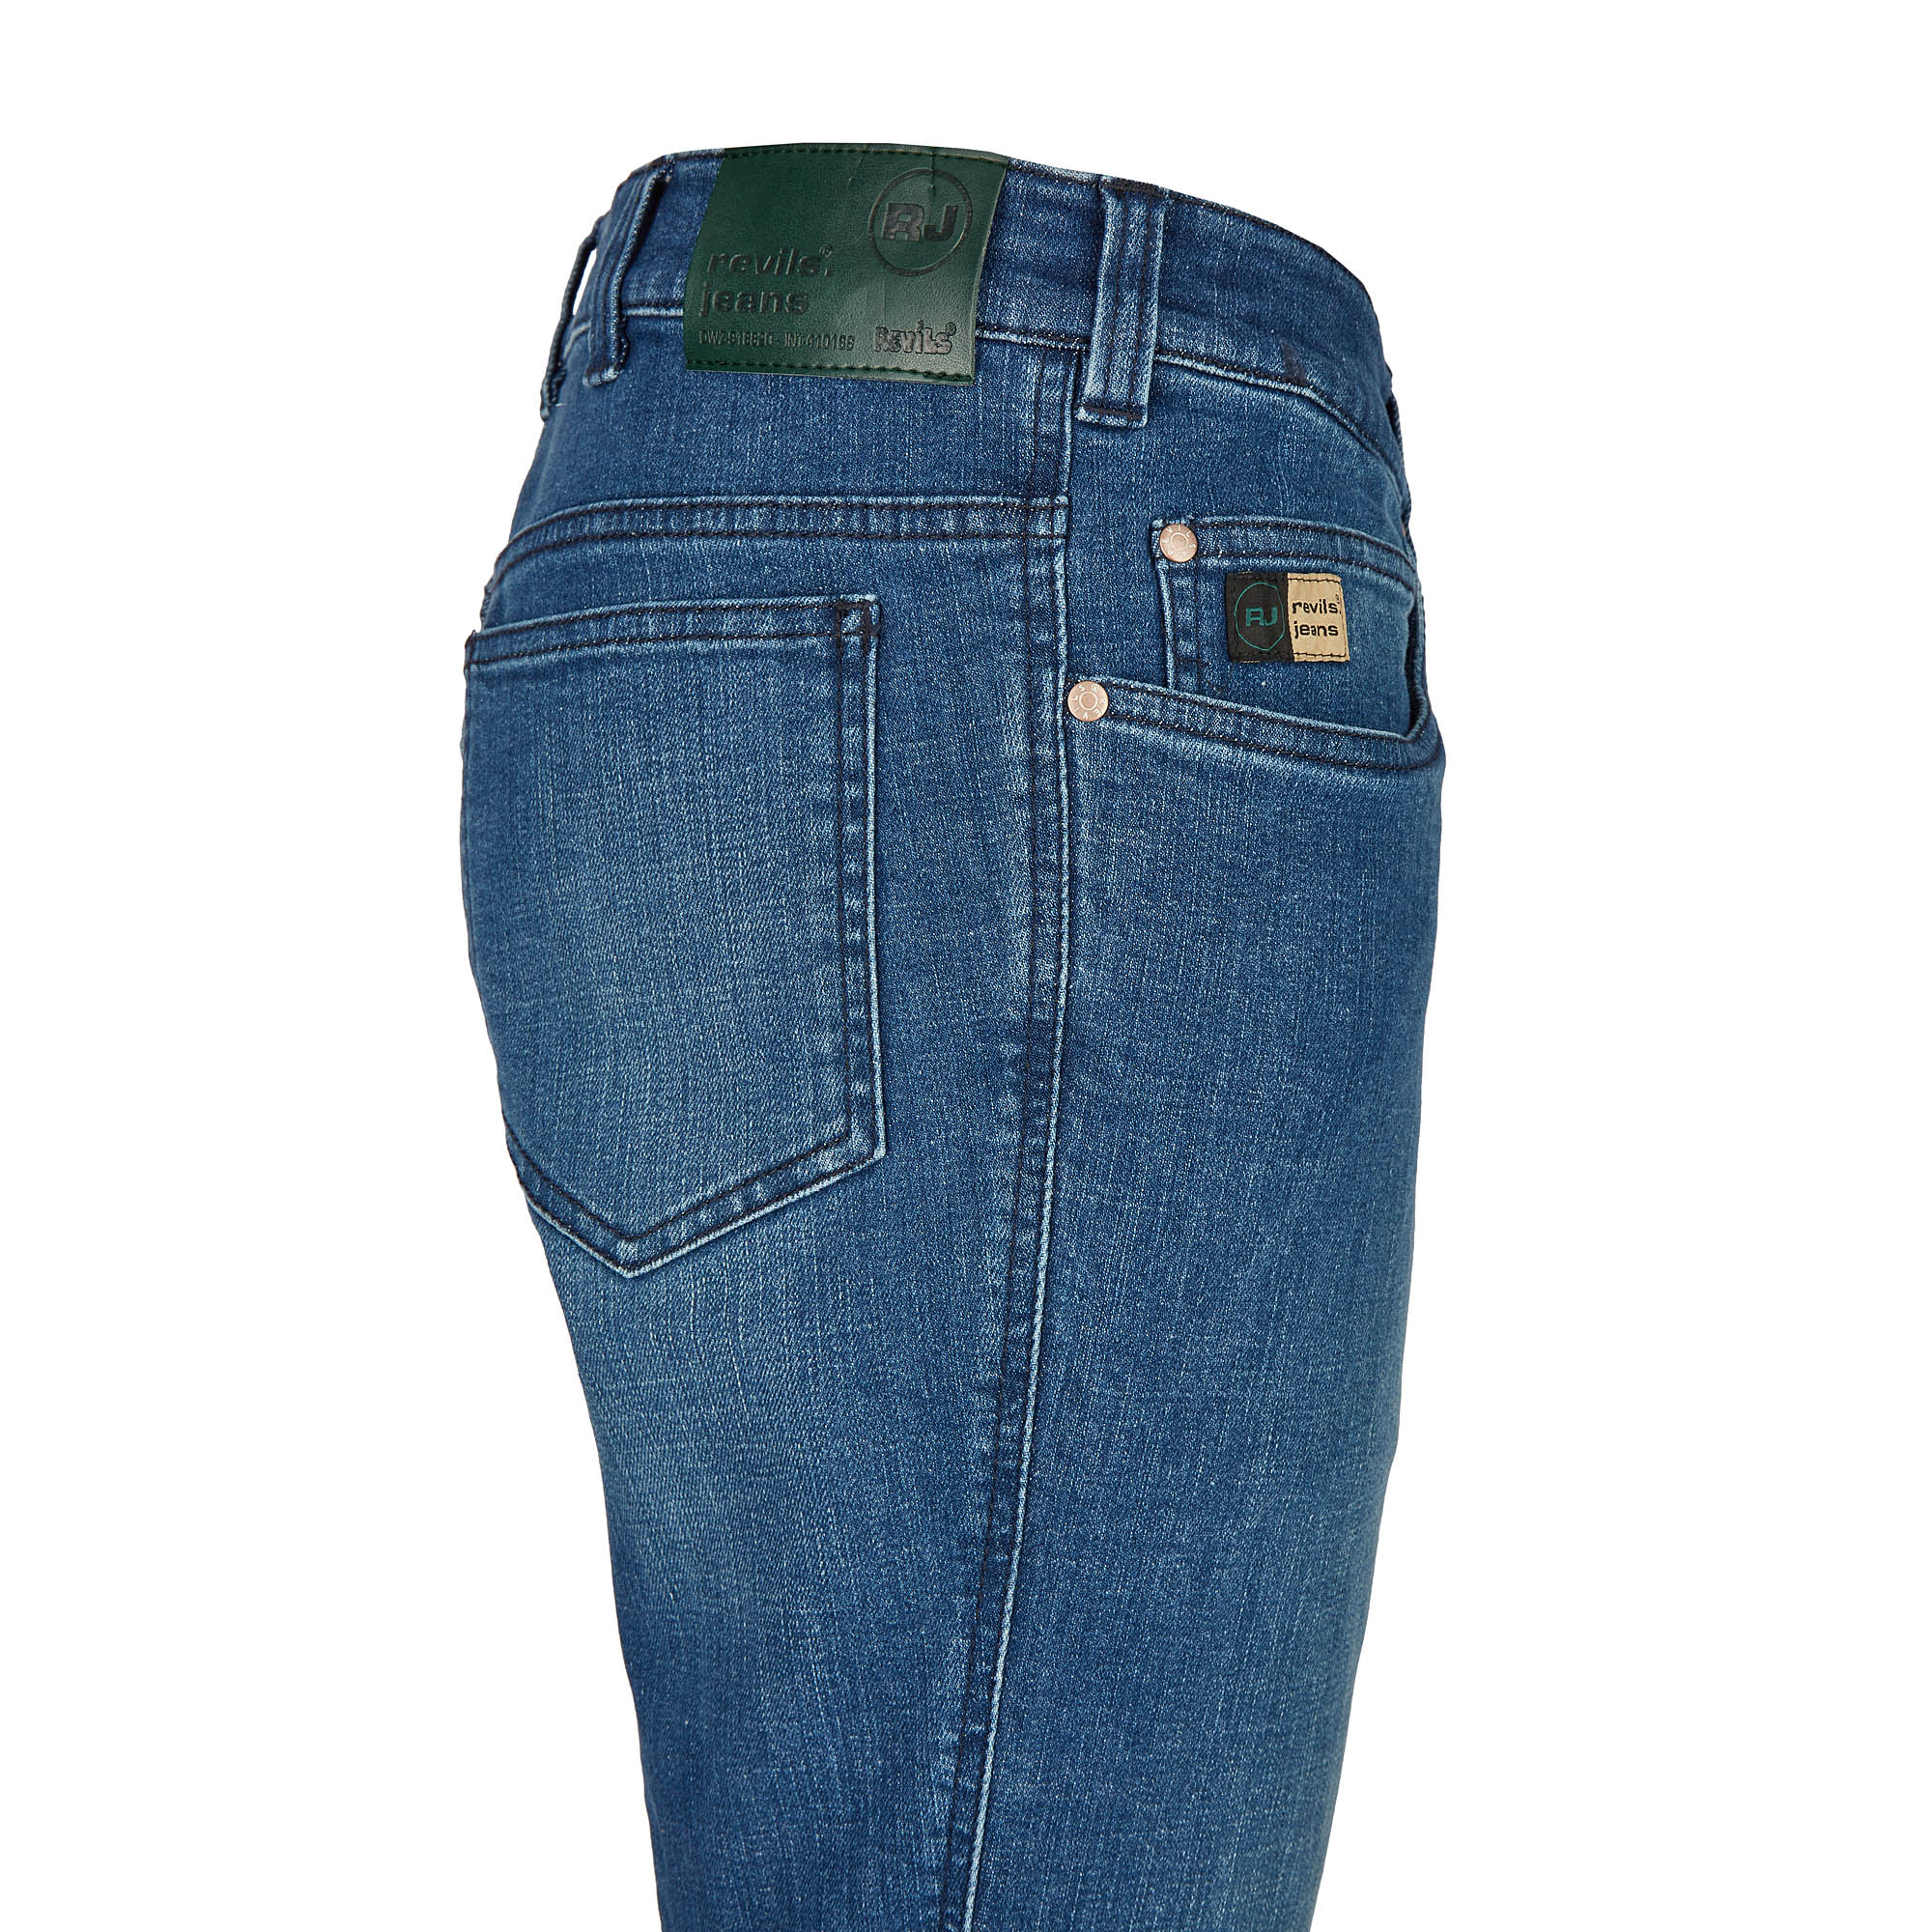 007120241330 4 Revils Jeans Hosen